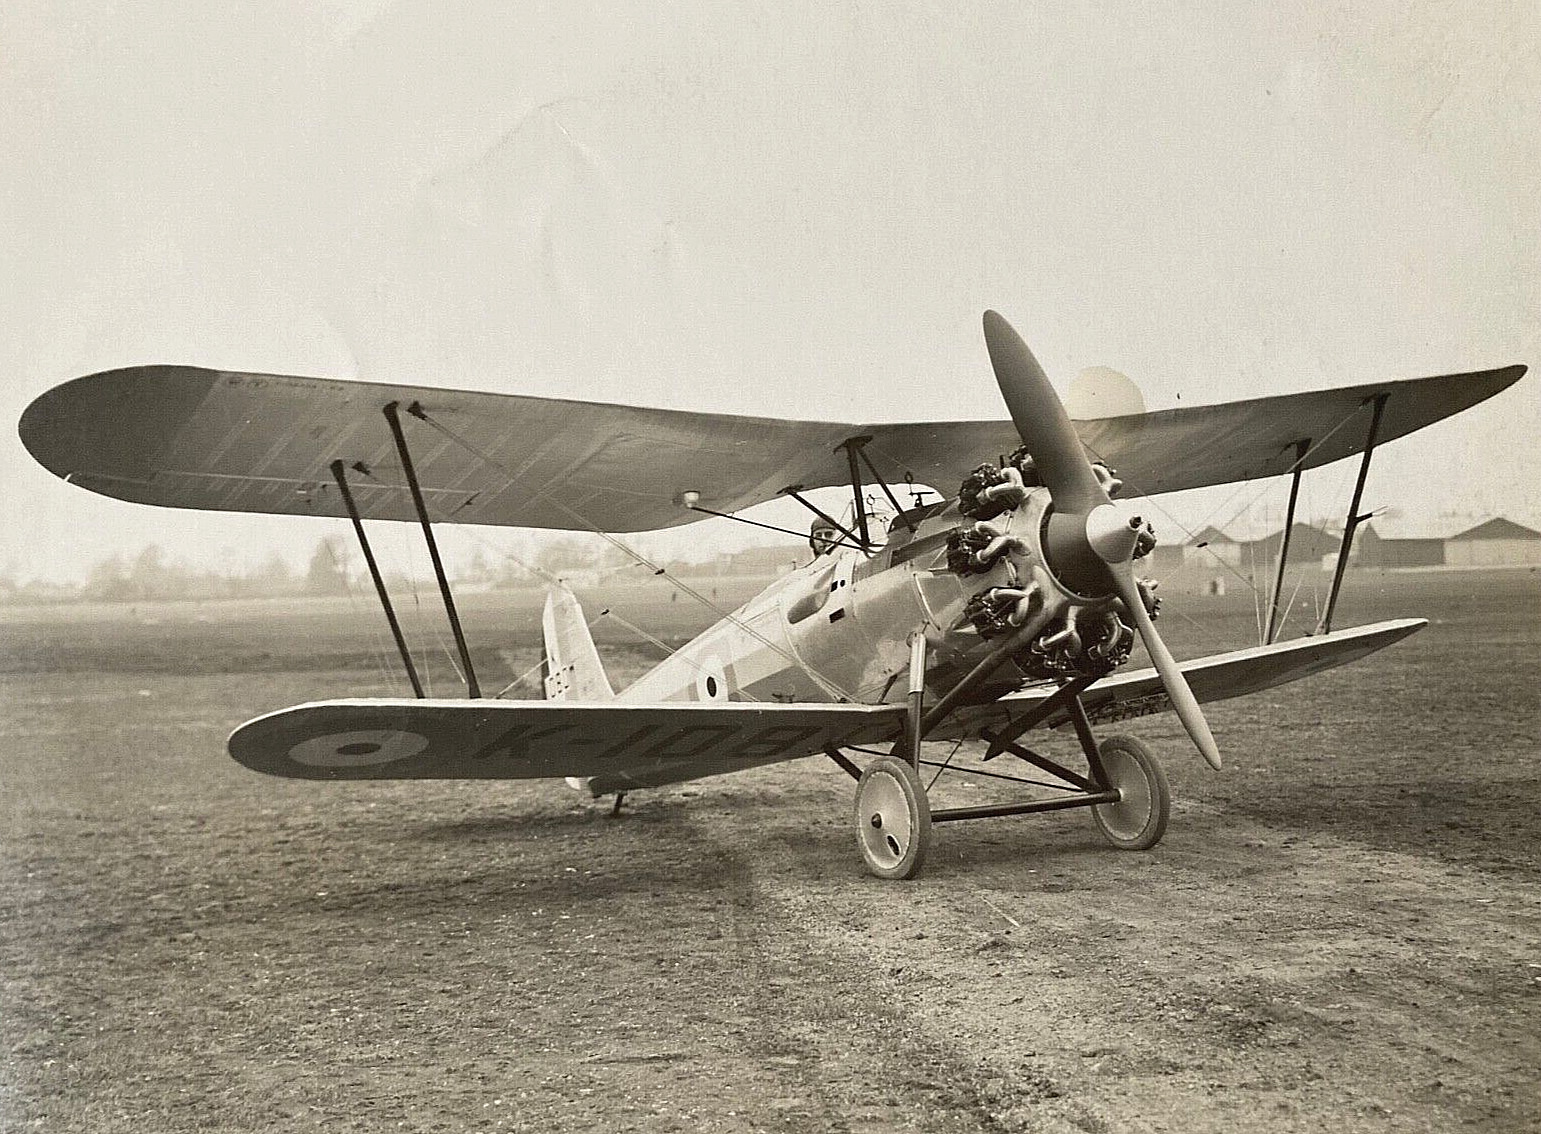 RARE PRE-WW2 BRITISH RAF BRISTOL BULLDOG TYPE 105 FIGHTER PLANE 1927 PHOTO